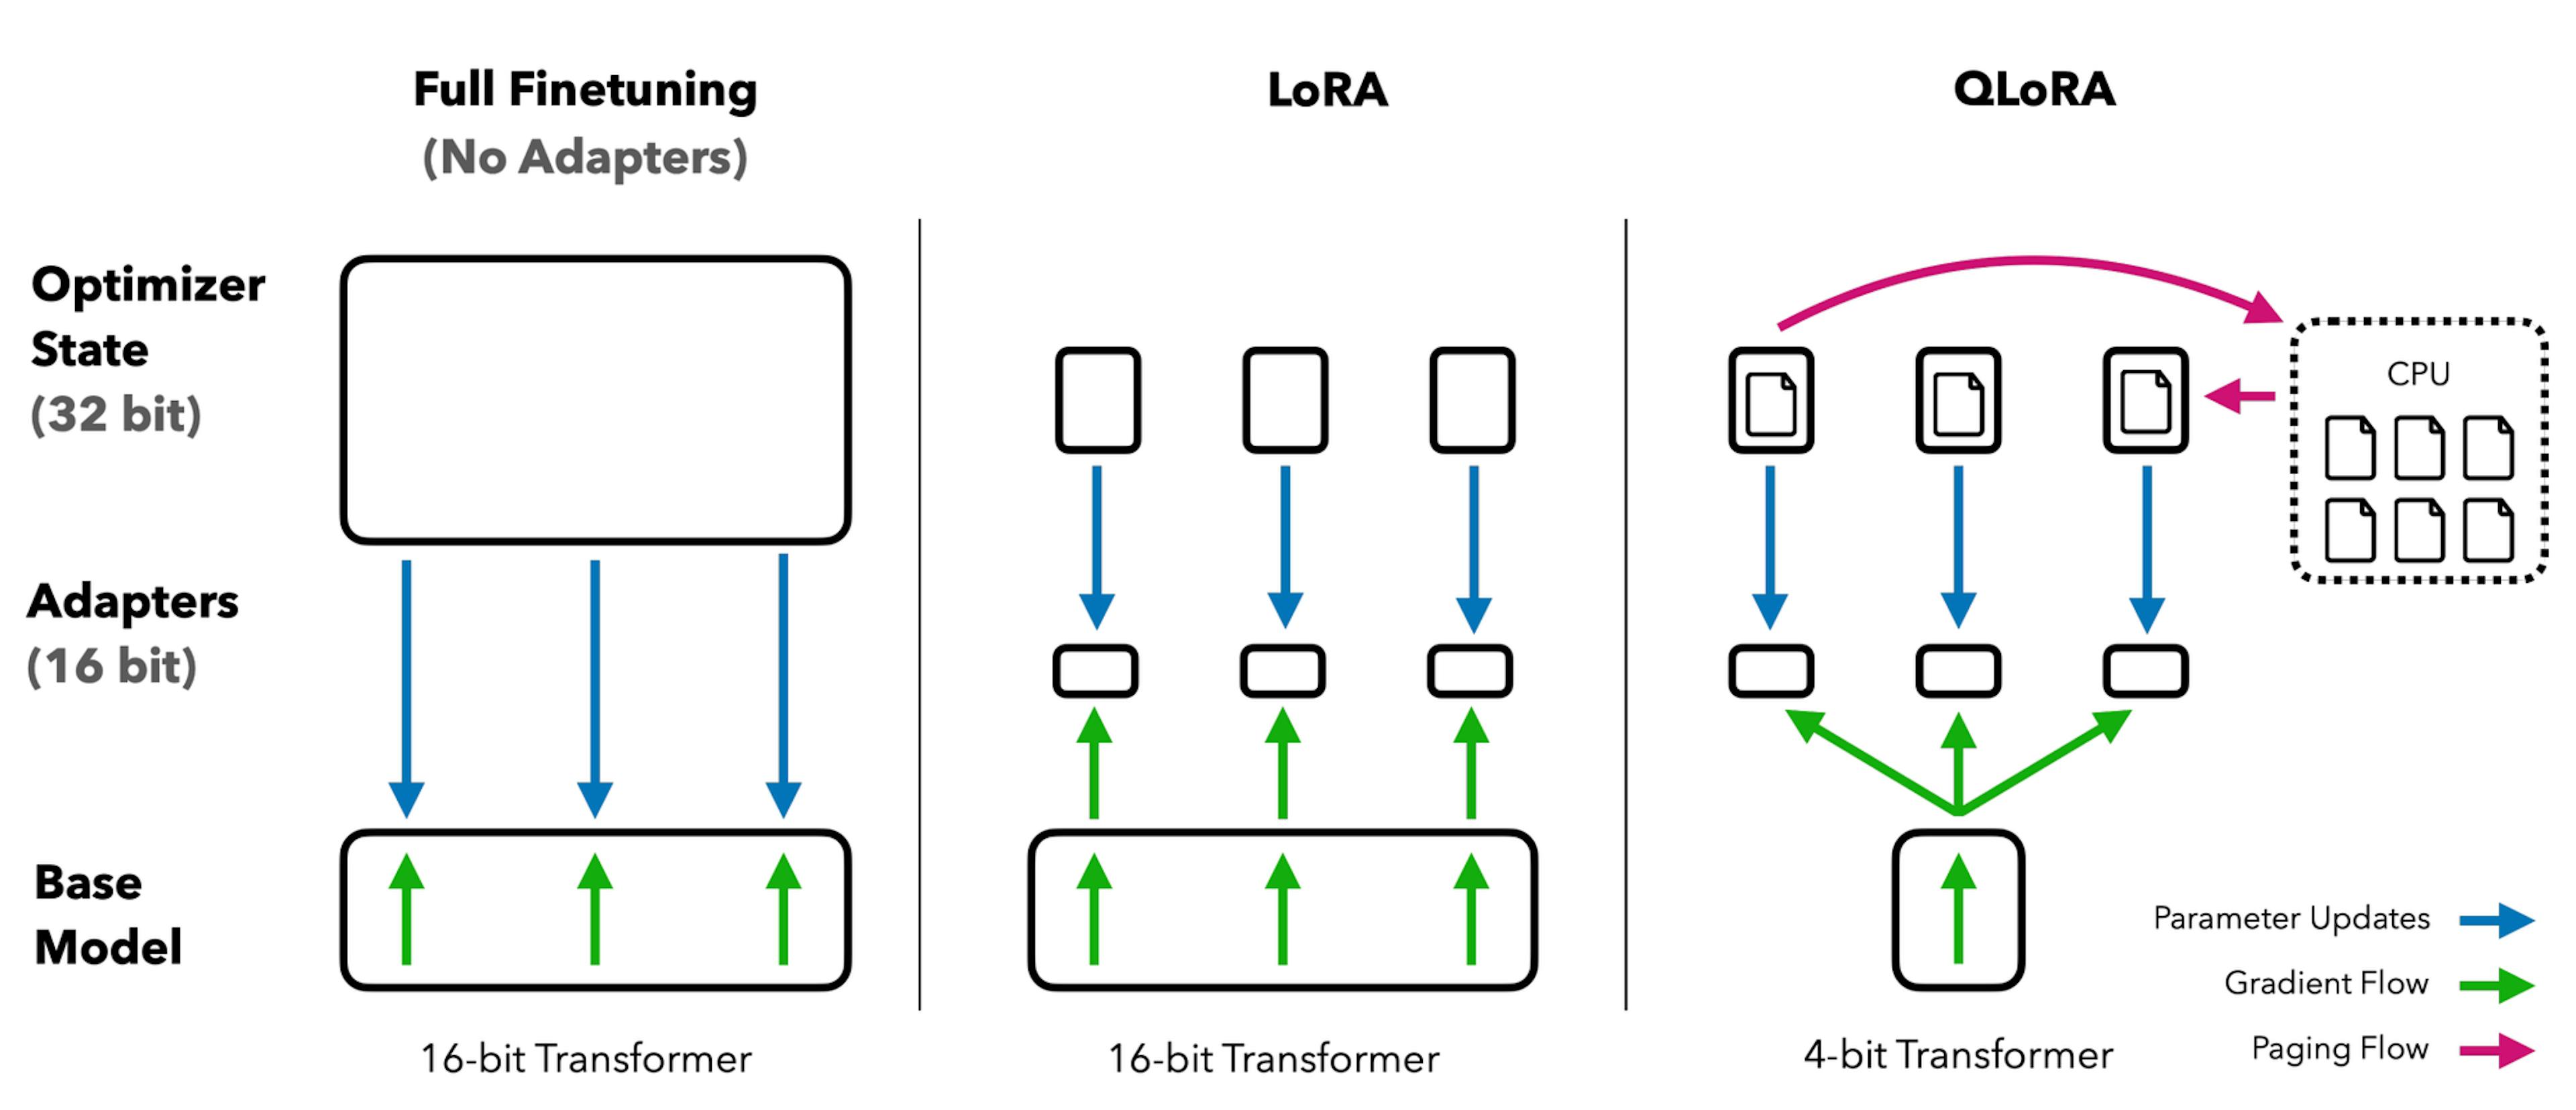 QLORA cải thiện so với LoRA bằng cách lượng tử hóa mô hình máy biến áp thành độ chính xác 4 bit và sử dụng trình tối ưu hóa phân trang để xử lý các đột biến bộ nhớ. - Hình ảnh từ giấy: QLoRA (Quantized Low-Rank Adaption)